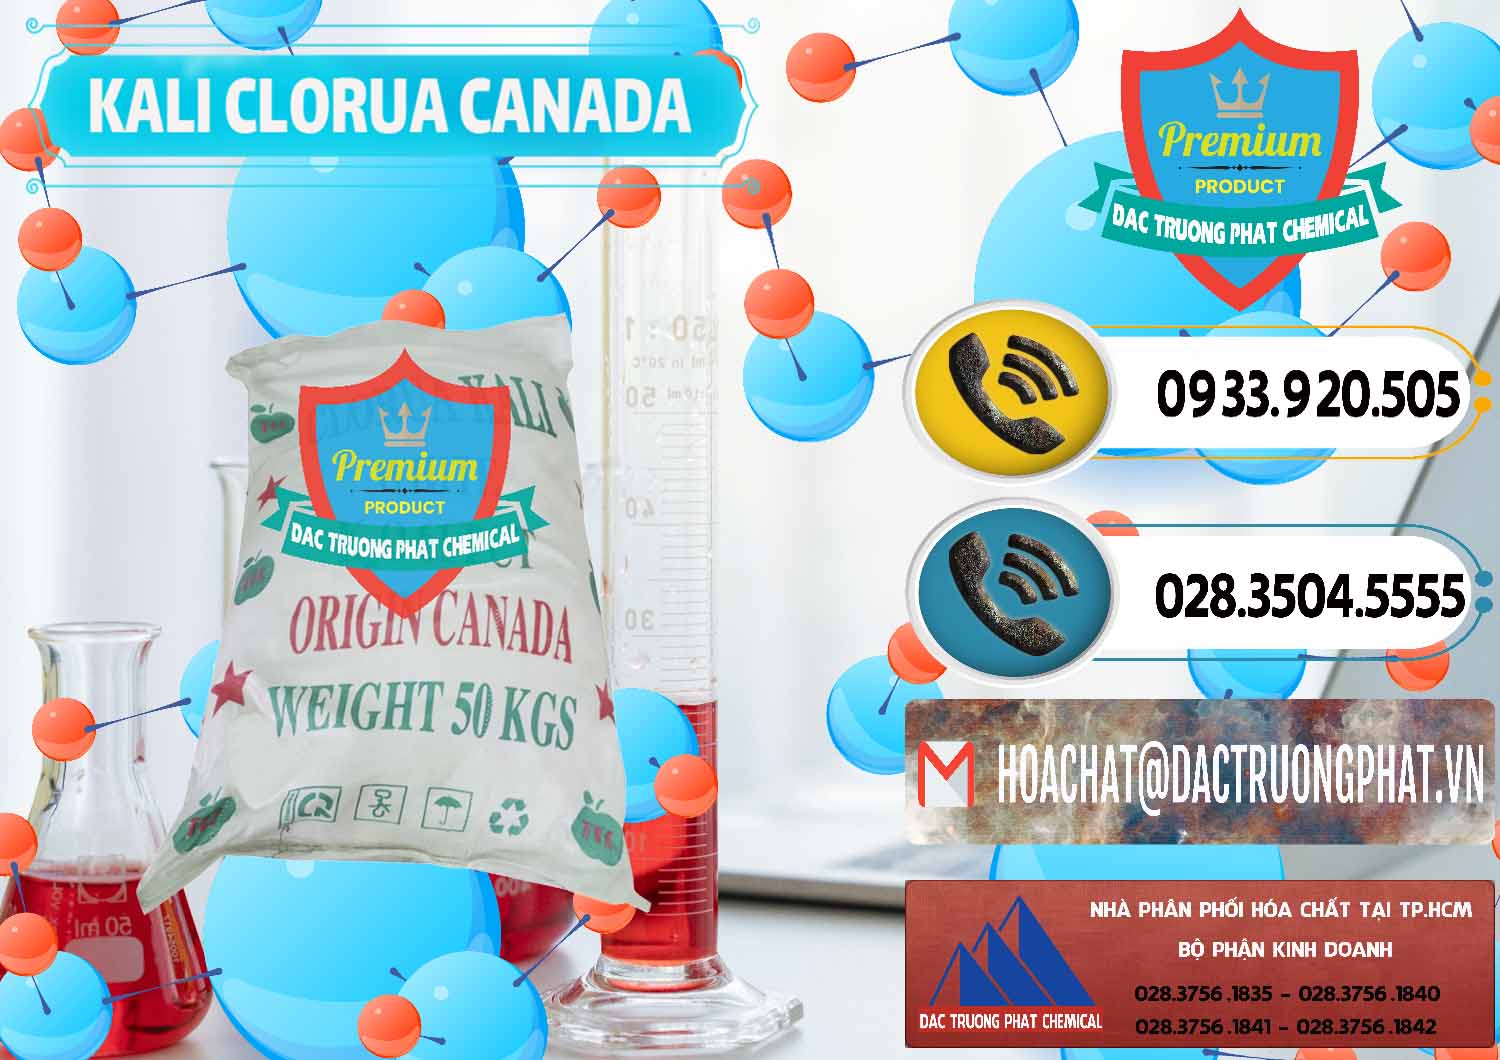 Công ty nhập khẩu & bán KCL – Kali Clorua Trắng Canada - 0437 - Đơn vị chuyên phân phối và nhập khẩu hóa chất tại TP.HCM - hoachatdetnhuom.vn